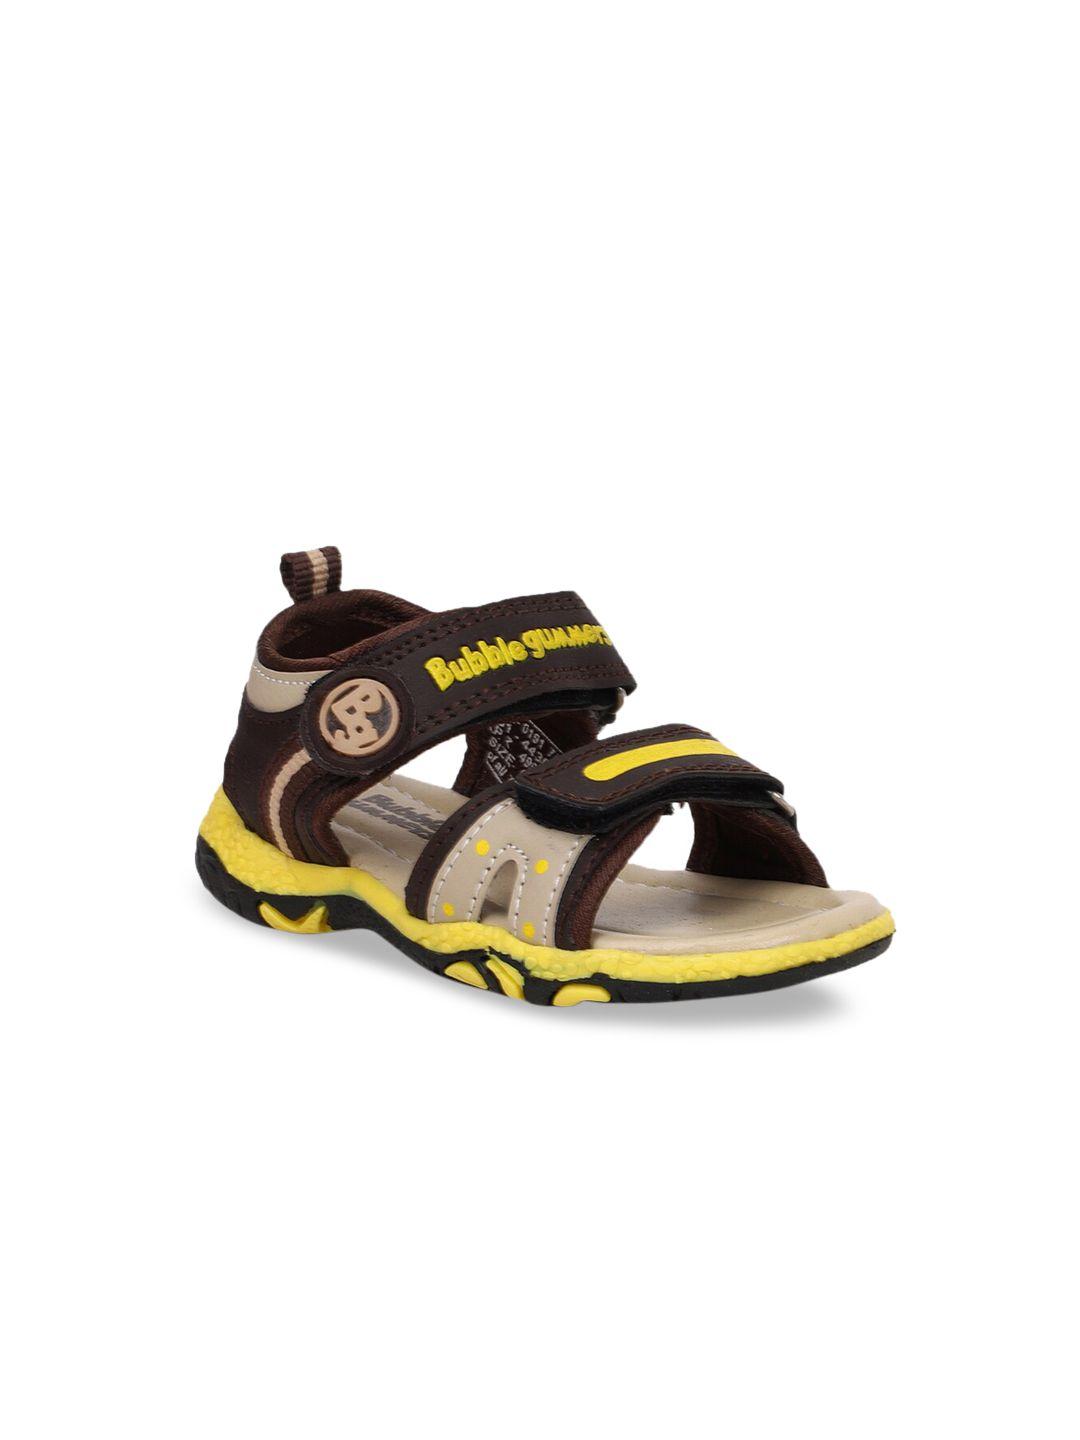 bubblegummers boys brown & yellow comfort sandals